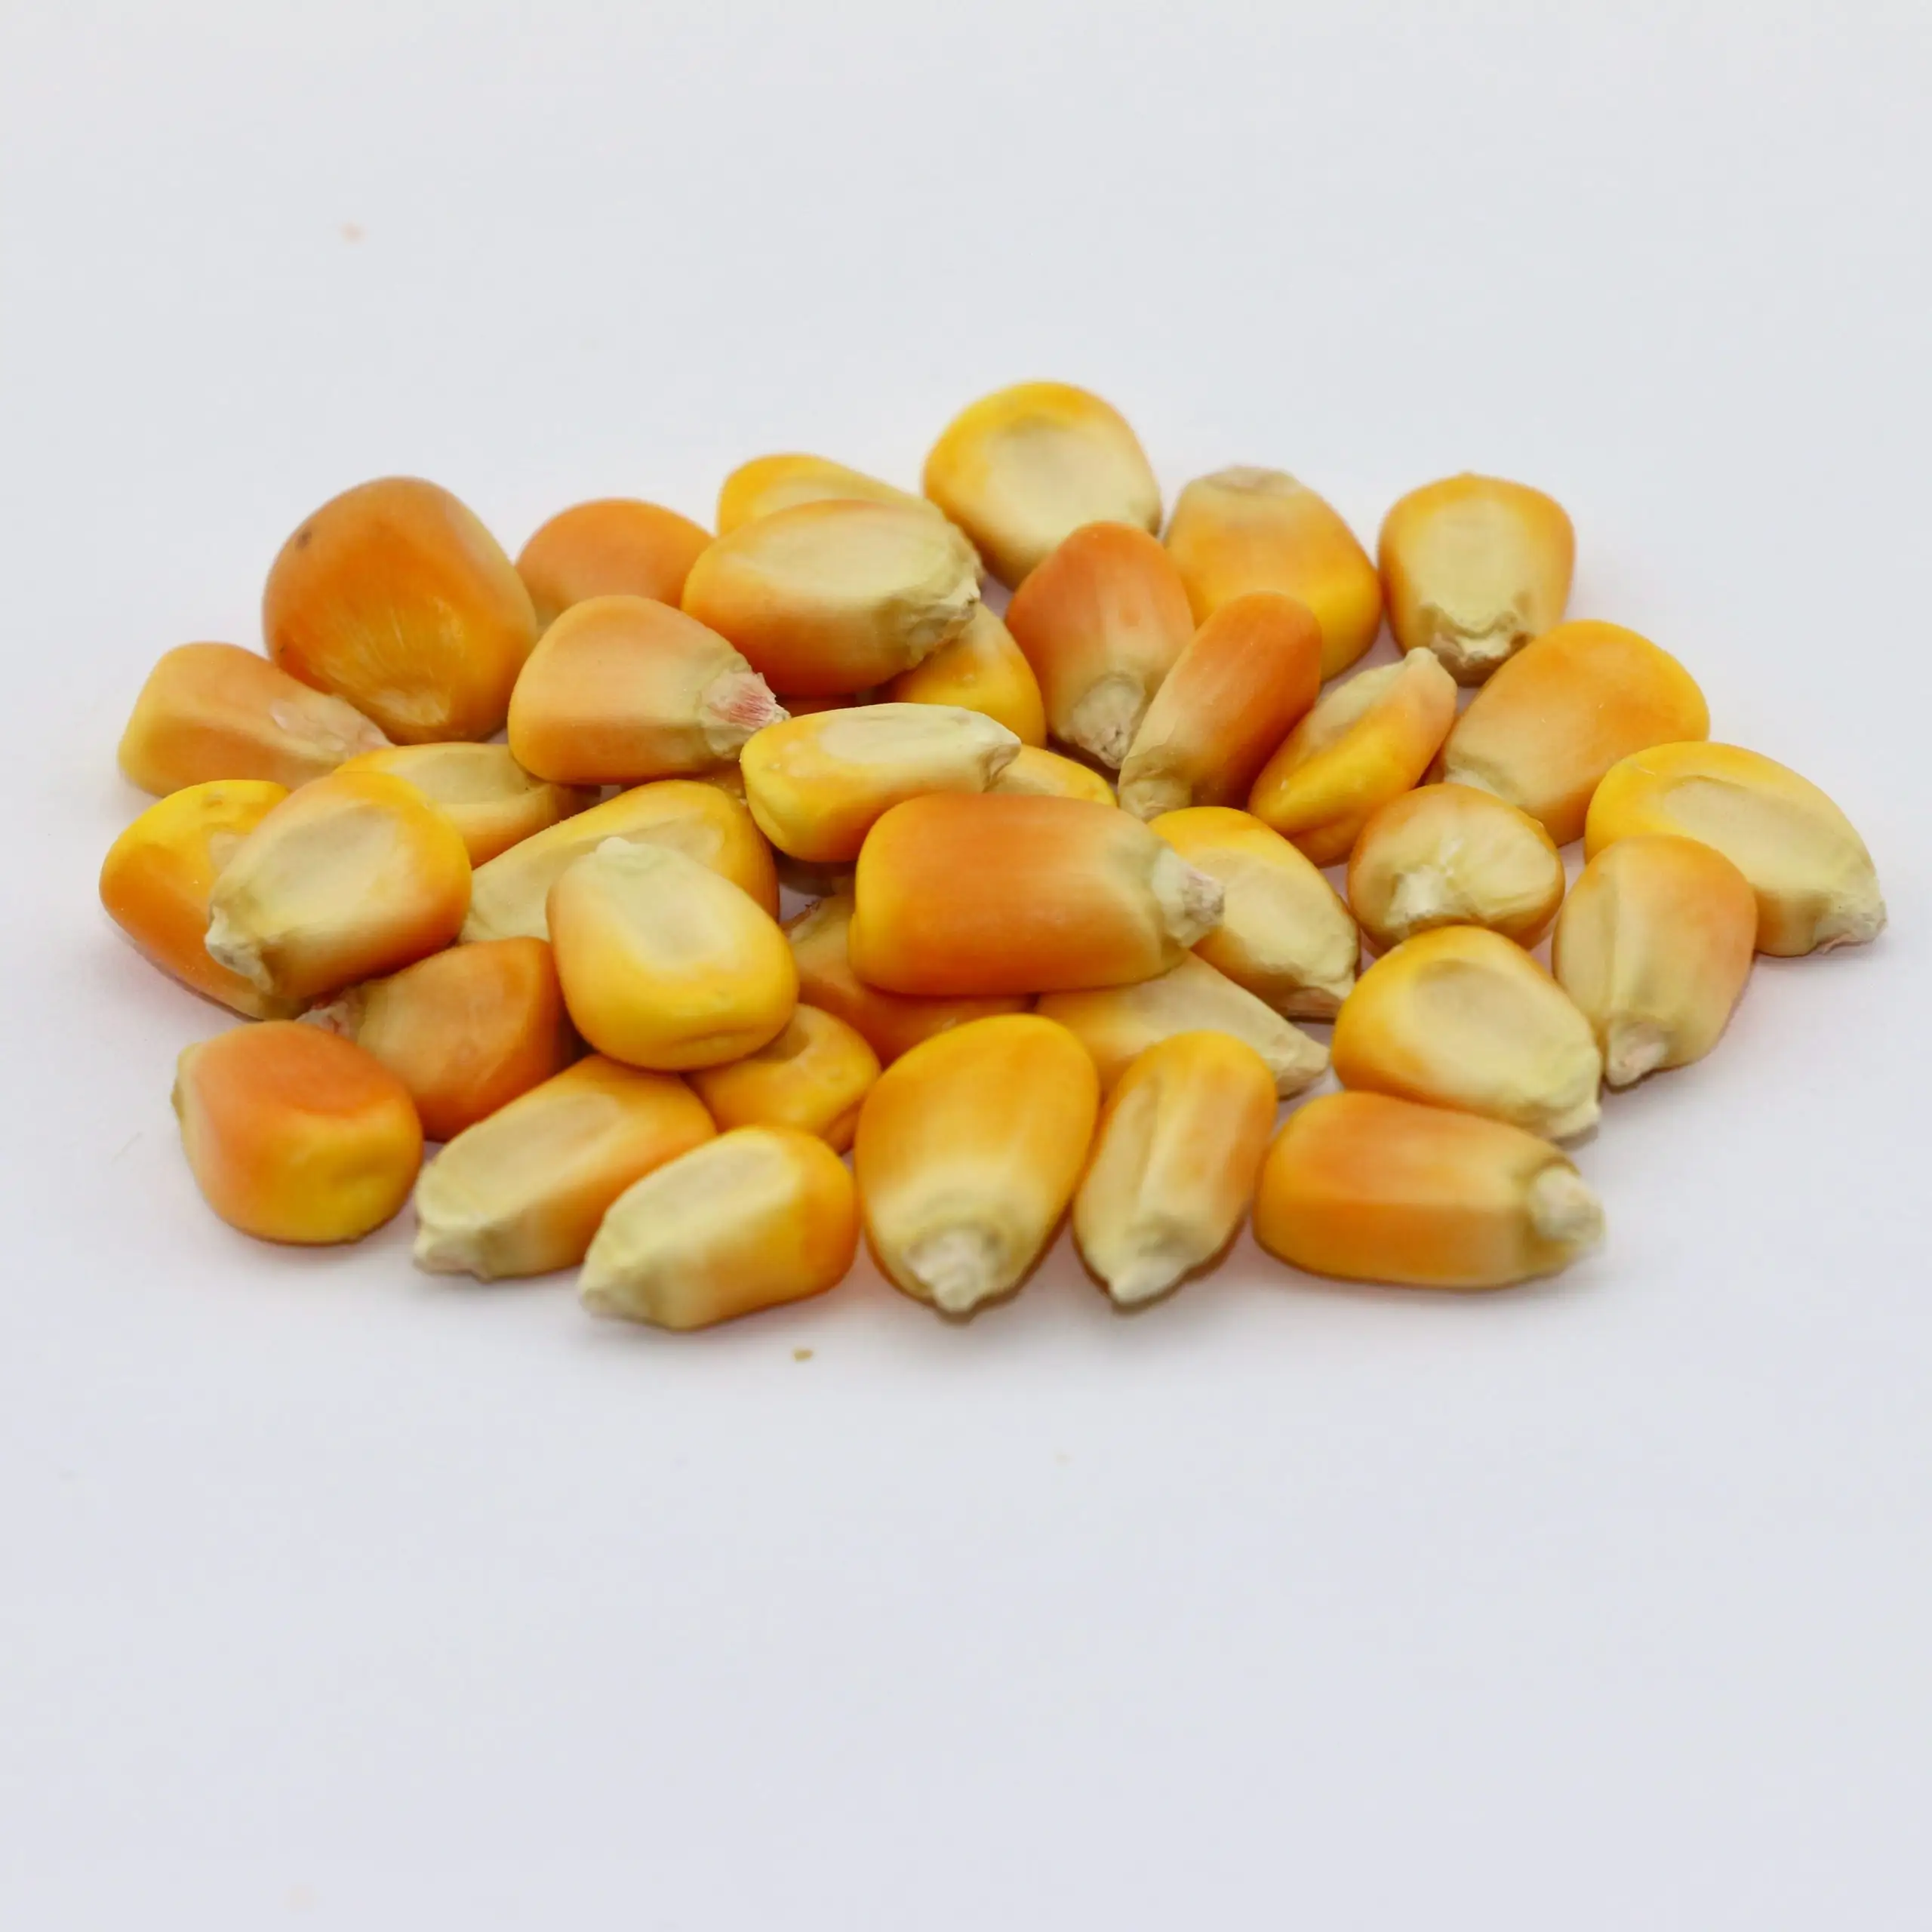 Ração animal de milho amarelo de alta qualidade disponível para exportação da Índia